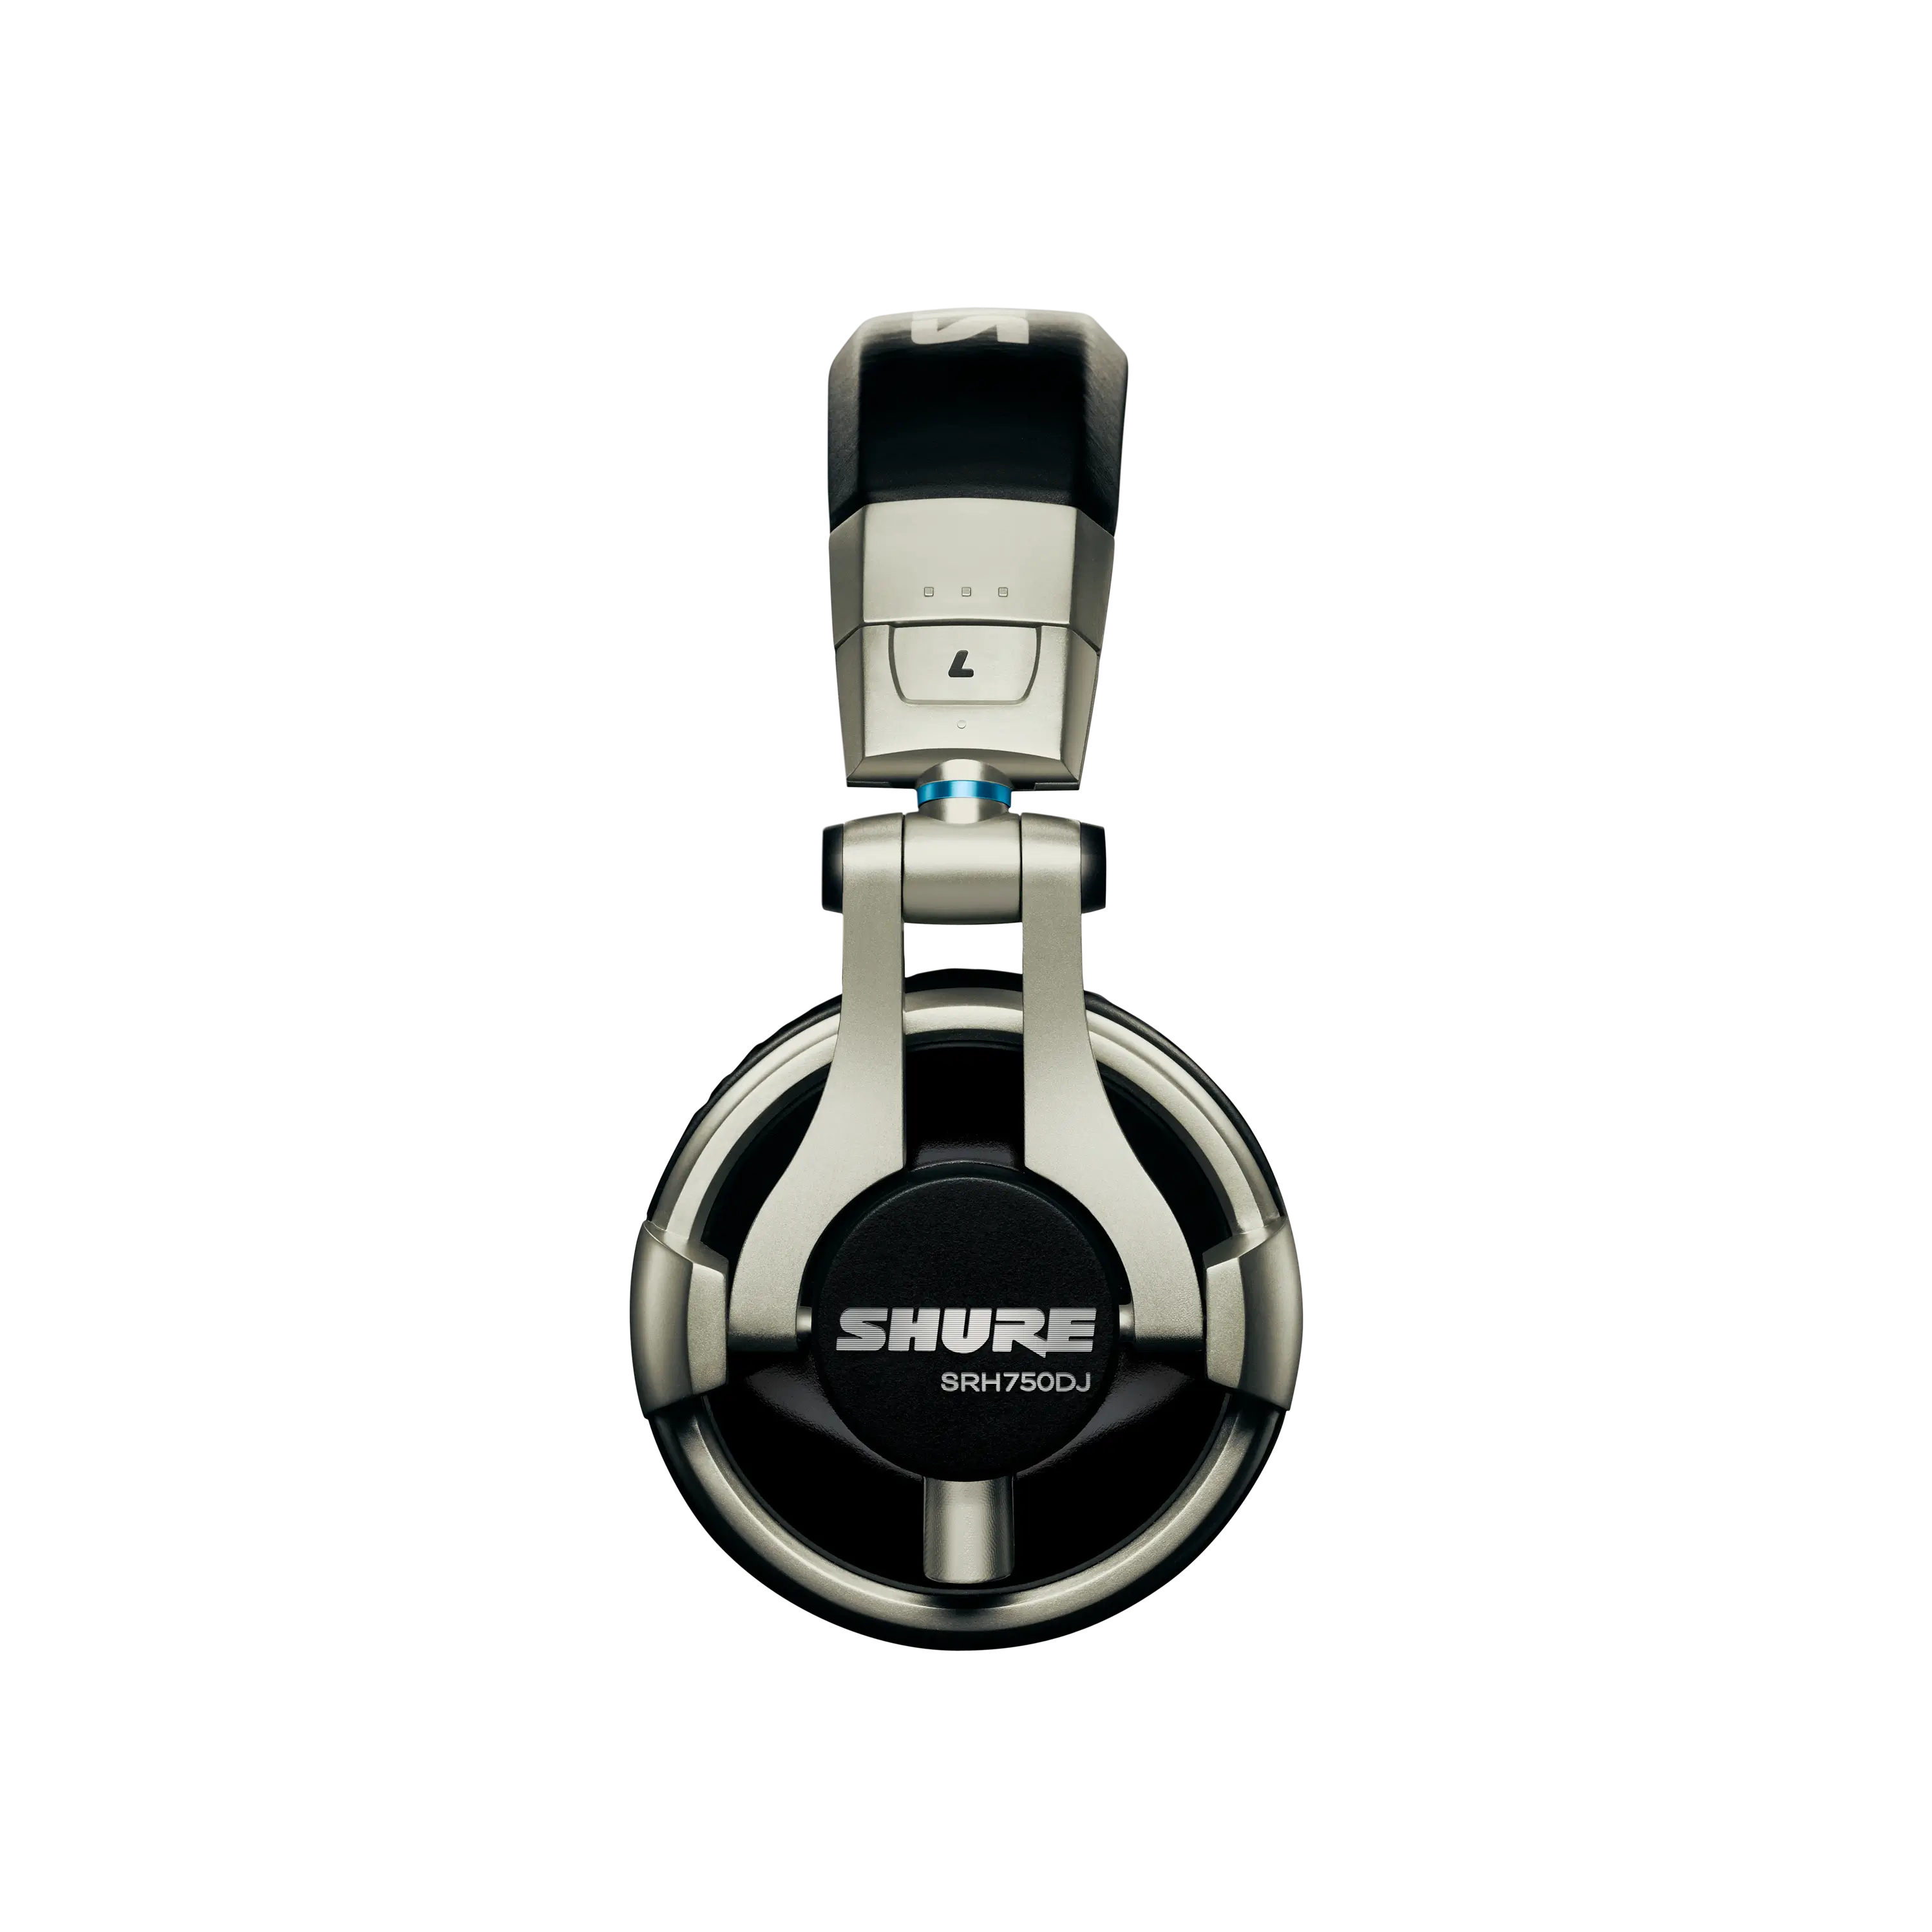 Shure SRH750 DJ Headphones